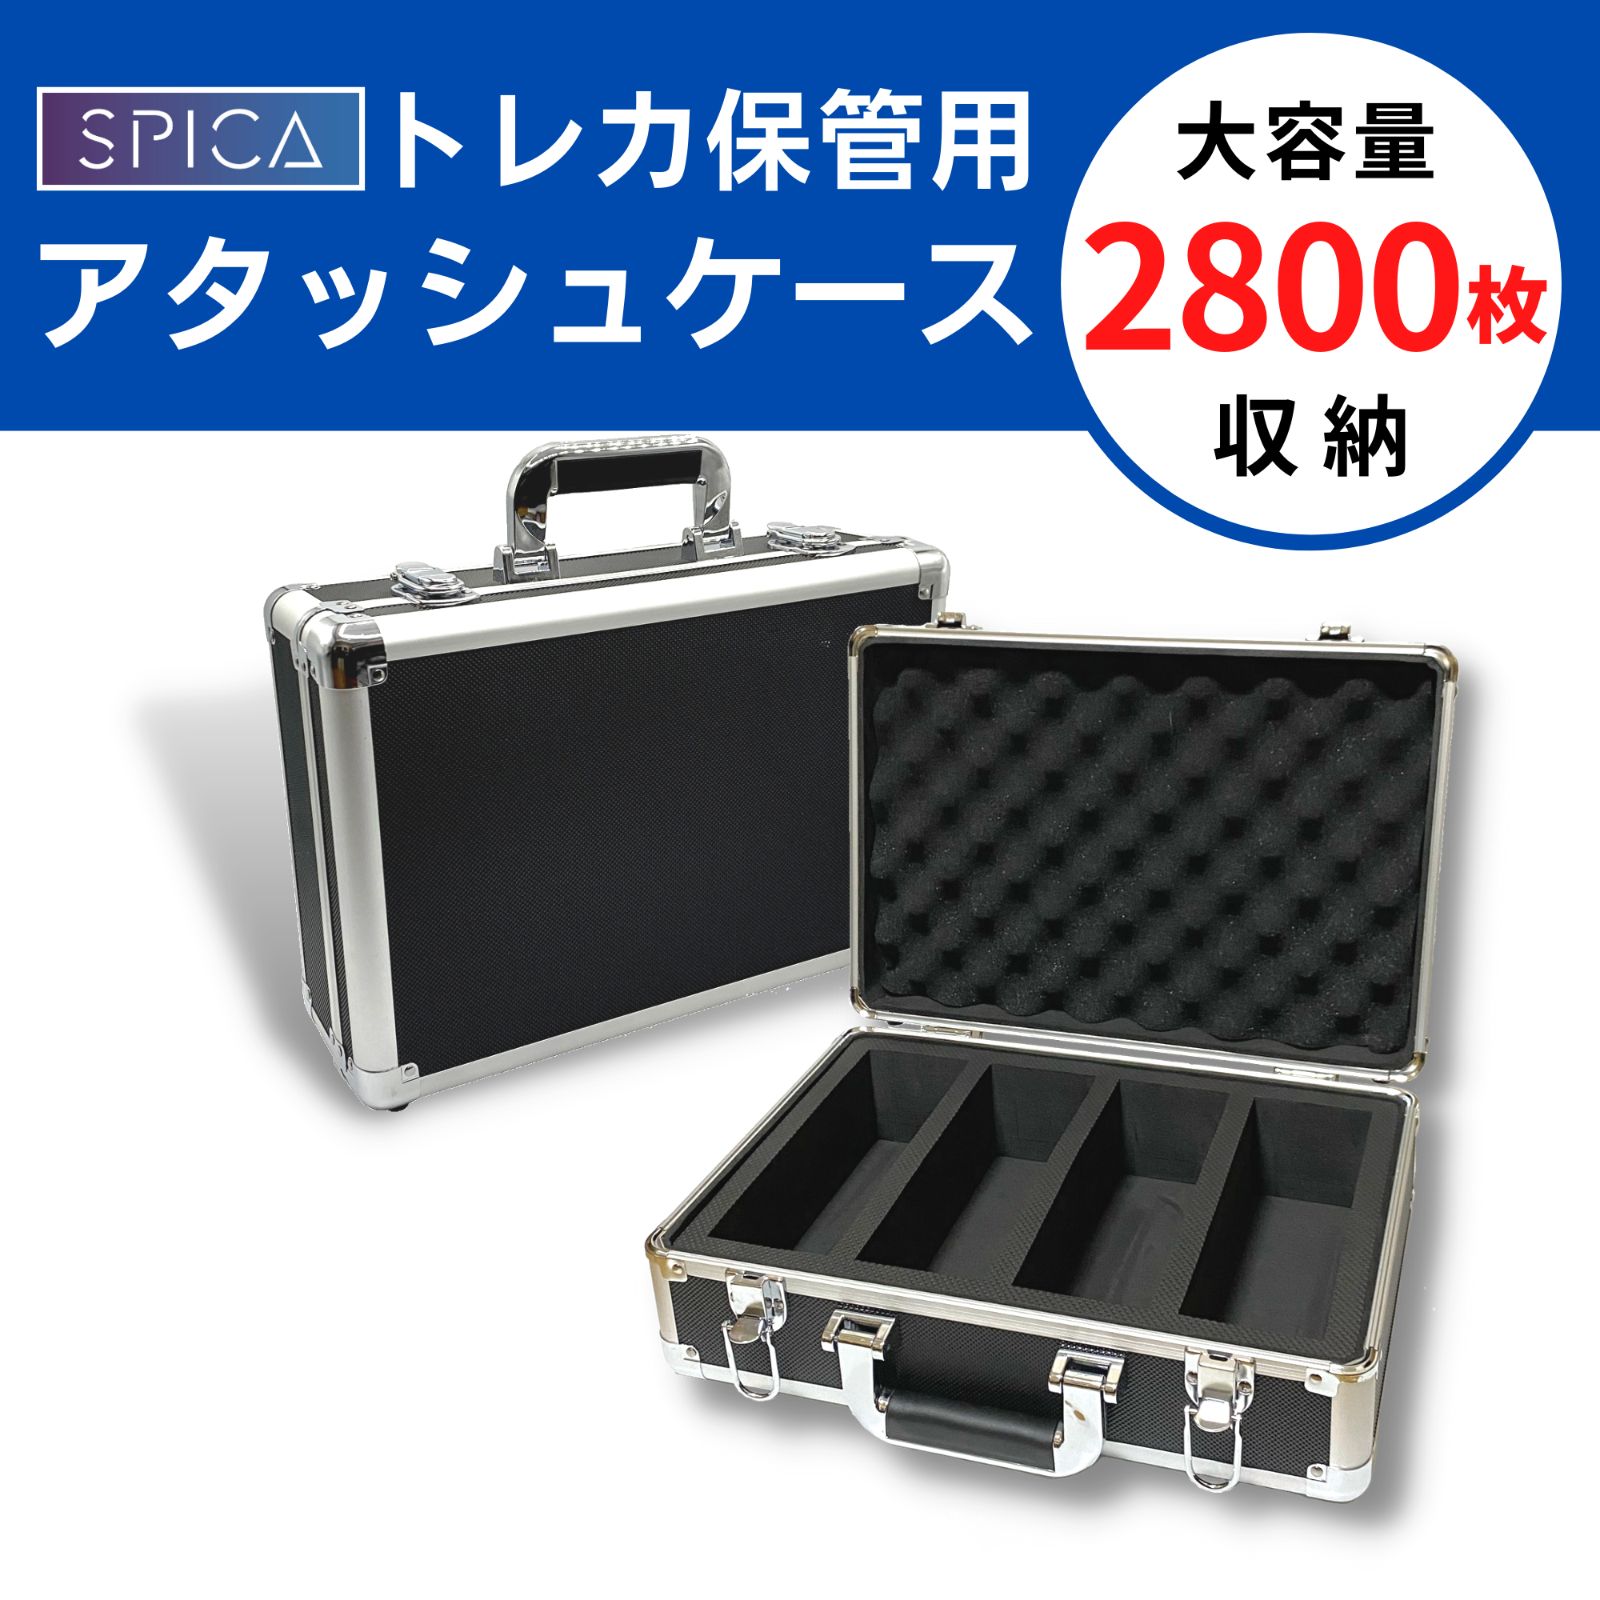 【新品未使用】 全トレカ対応 アタッシュケース デッキケース ストレージボックス